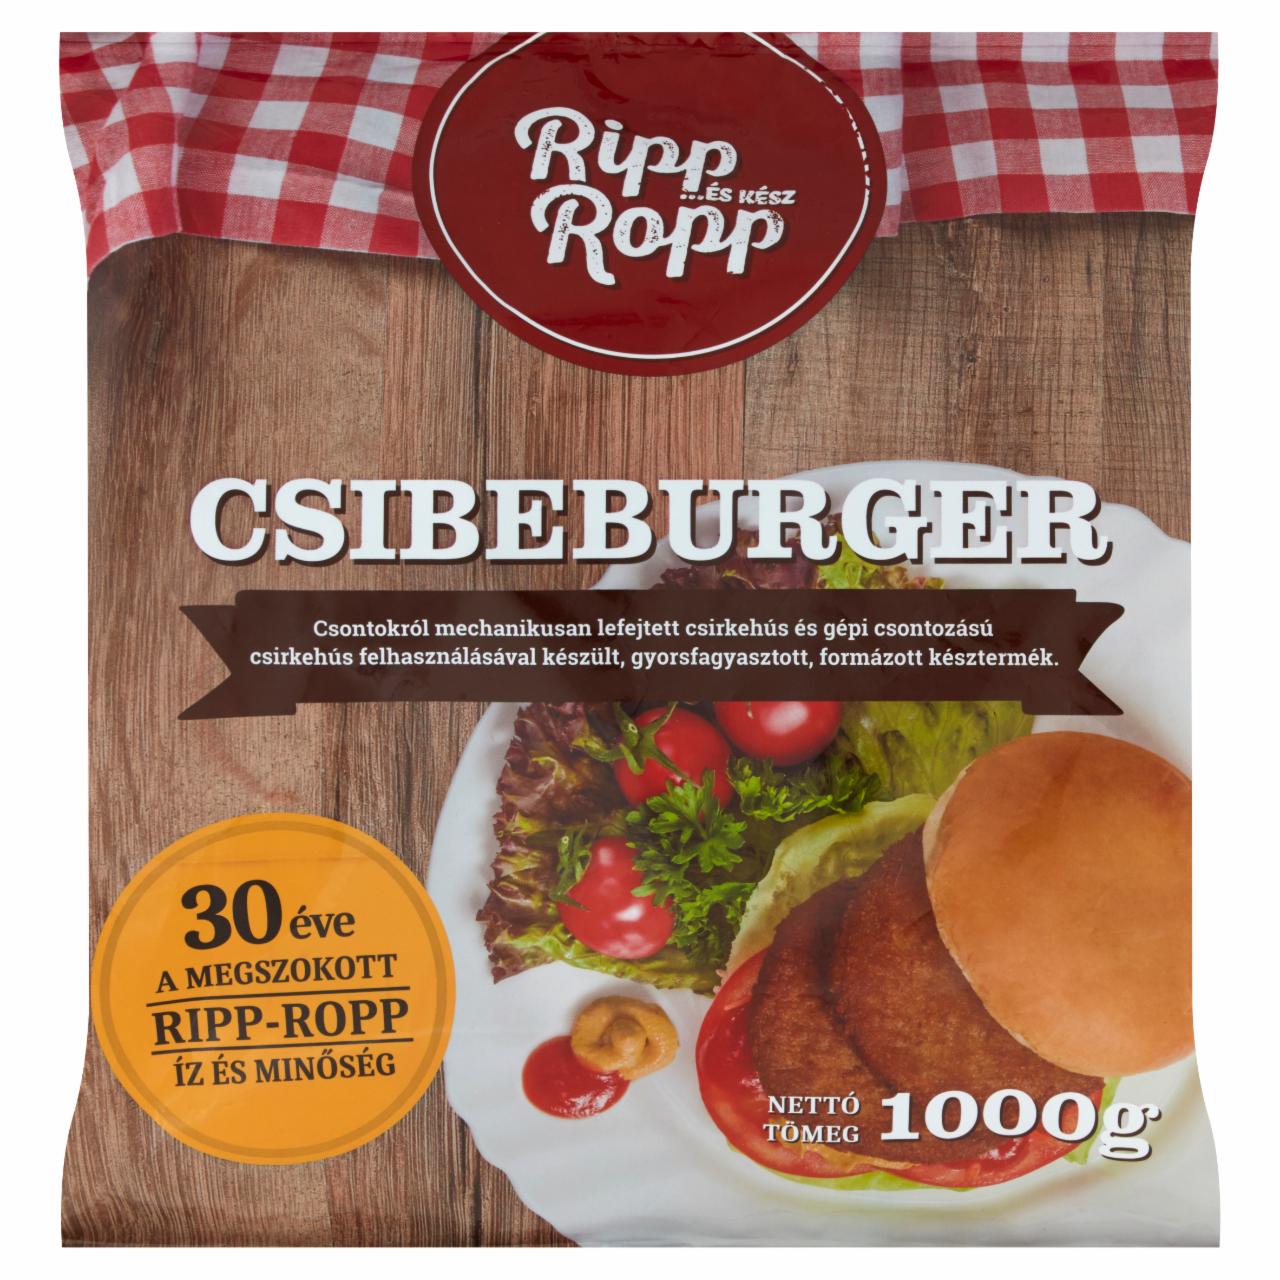 Képek - Ripp-Ropp gyorsfagyasztott csibeburger 1000 g